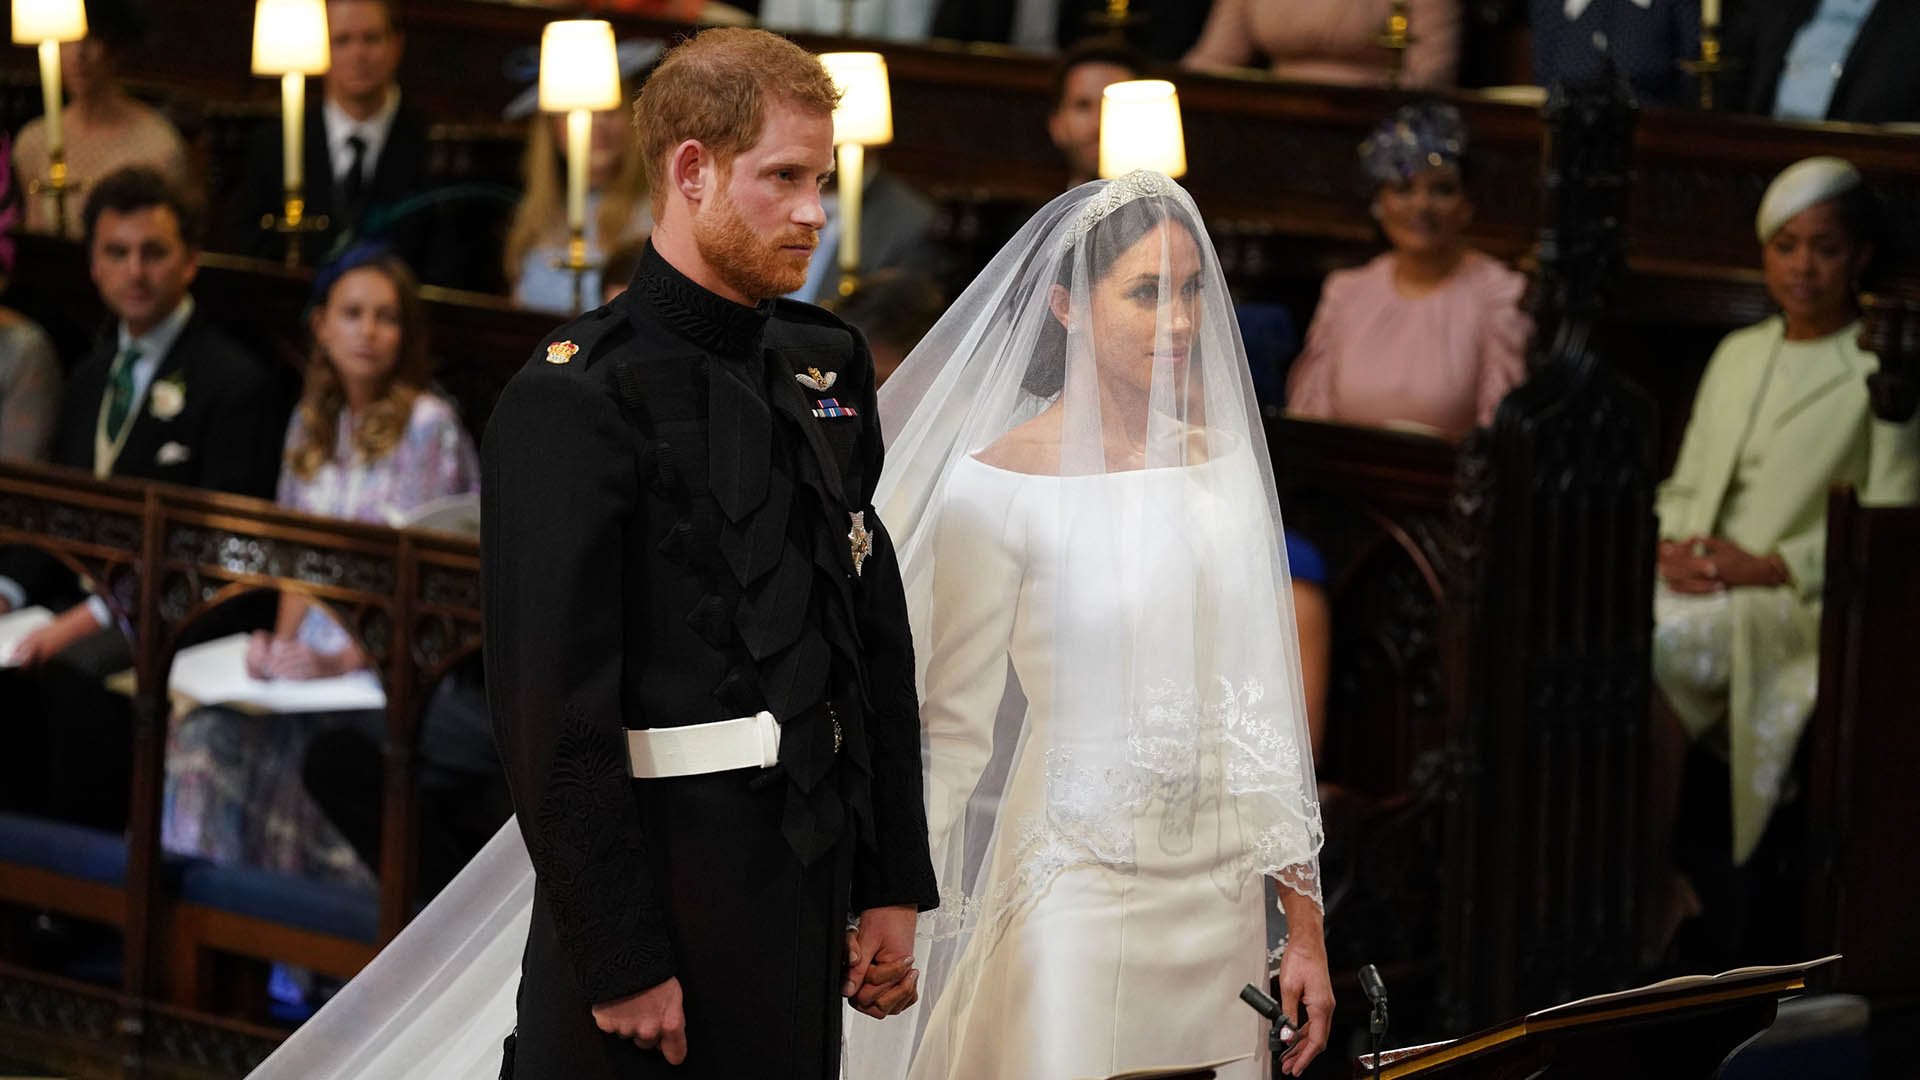 La boda del príncipe Harry y Meghan Markle (AFP)